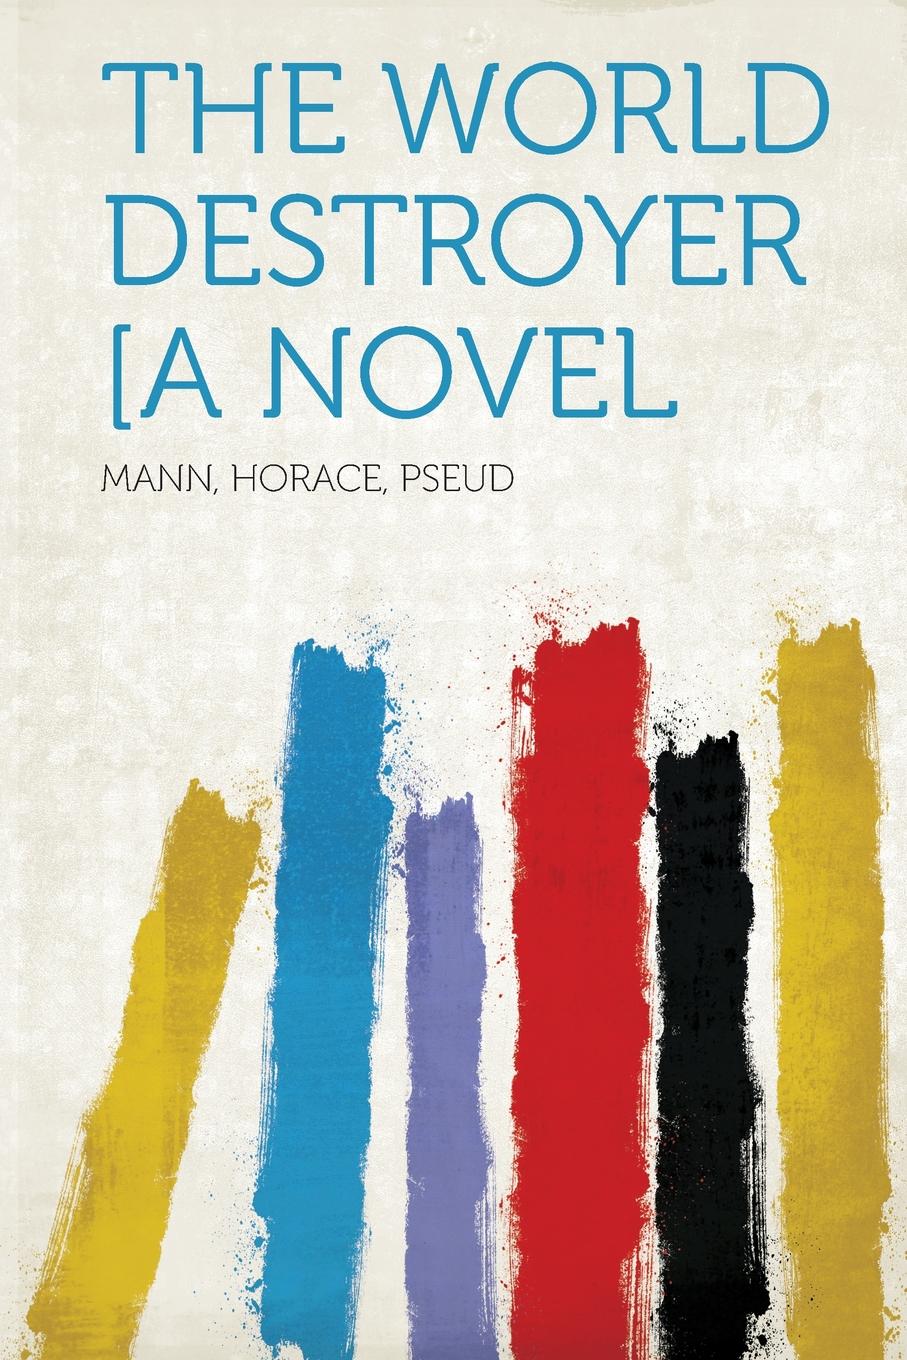 The World Destroyer .A Novel